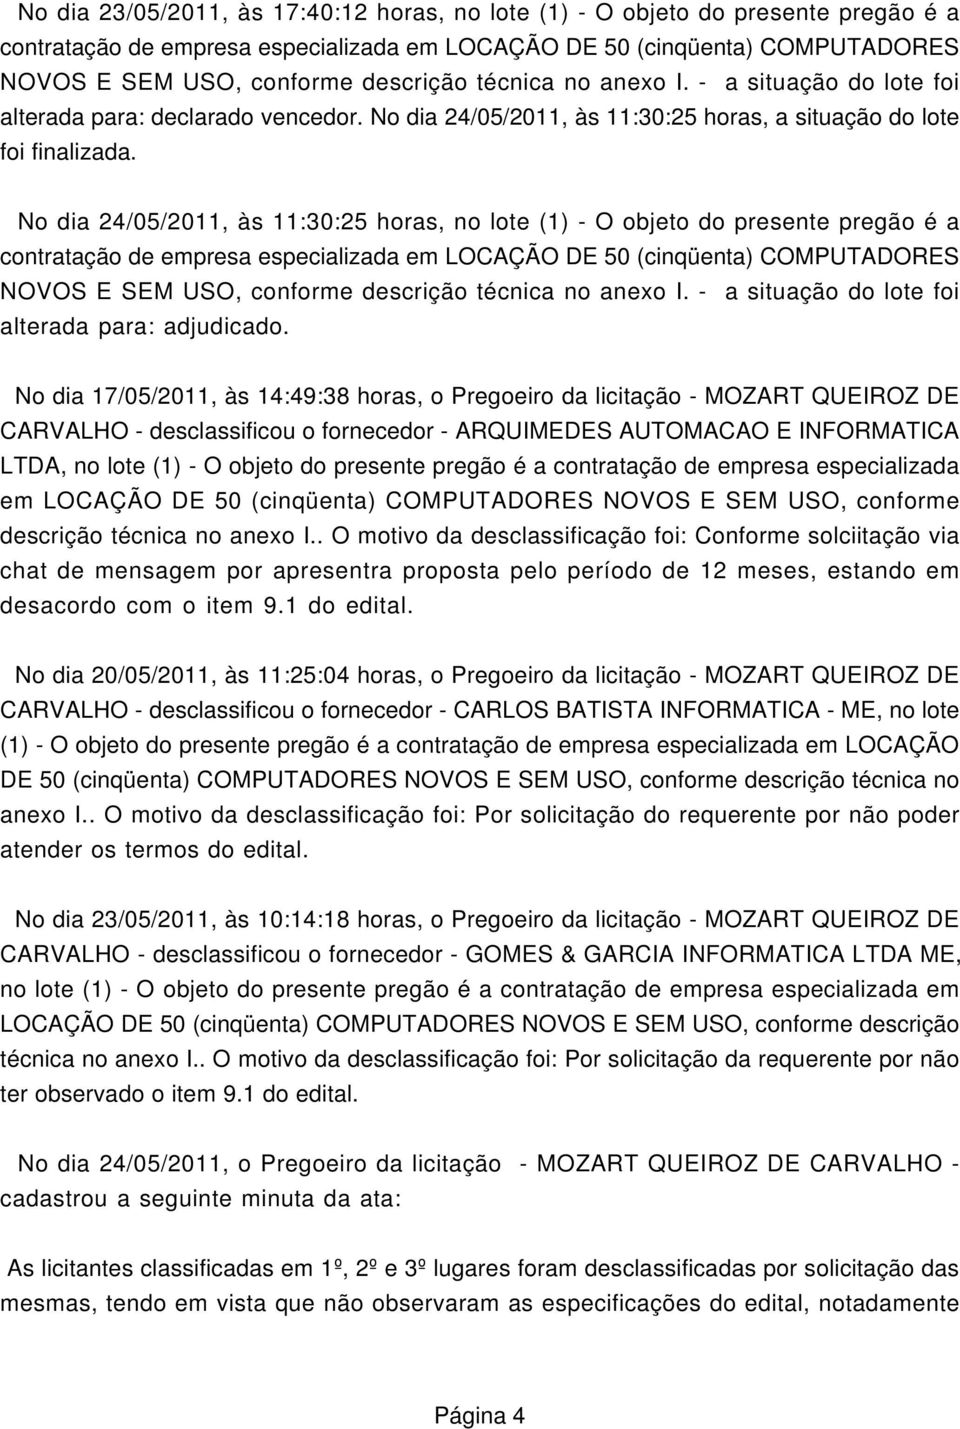 No dia 17/05/2011, às 14:49:38 horas, o Pregoeiro da licitação - MOZART QUEIROZ DE CARVALHO - desclassificou o fornecedor - ARQUIMEDES AUTOMACAO E INFORMATICA LTDA, no lote (1) - O objeto do presente